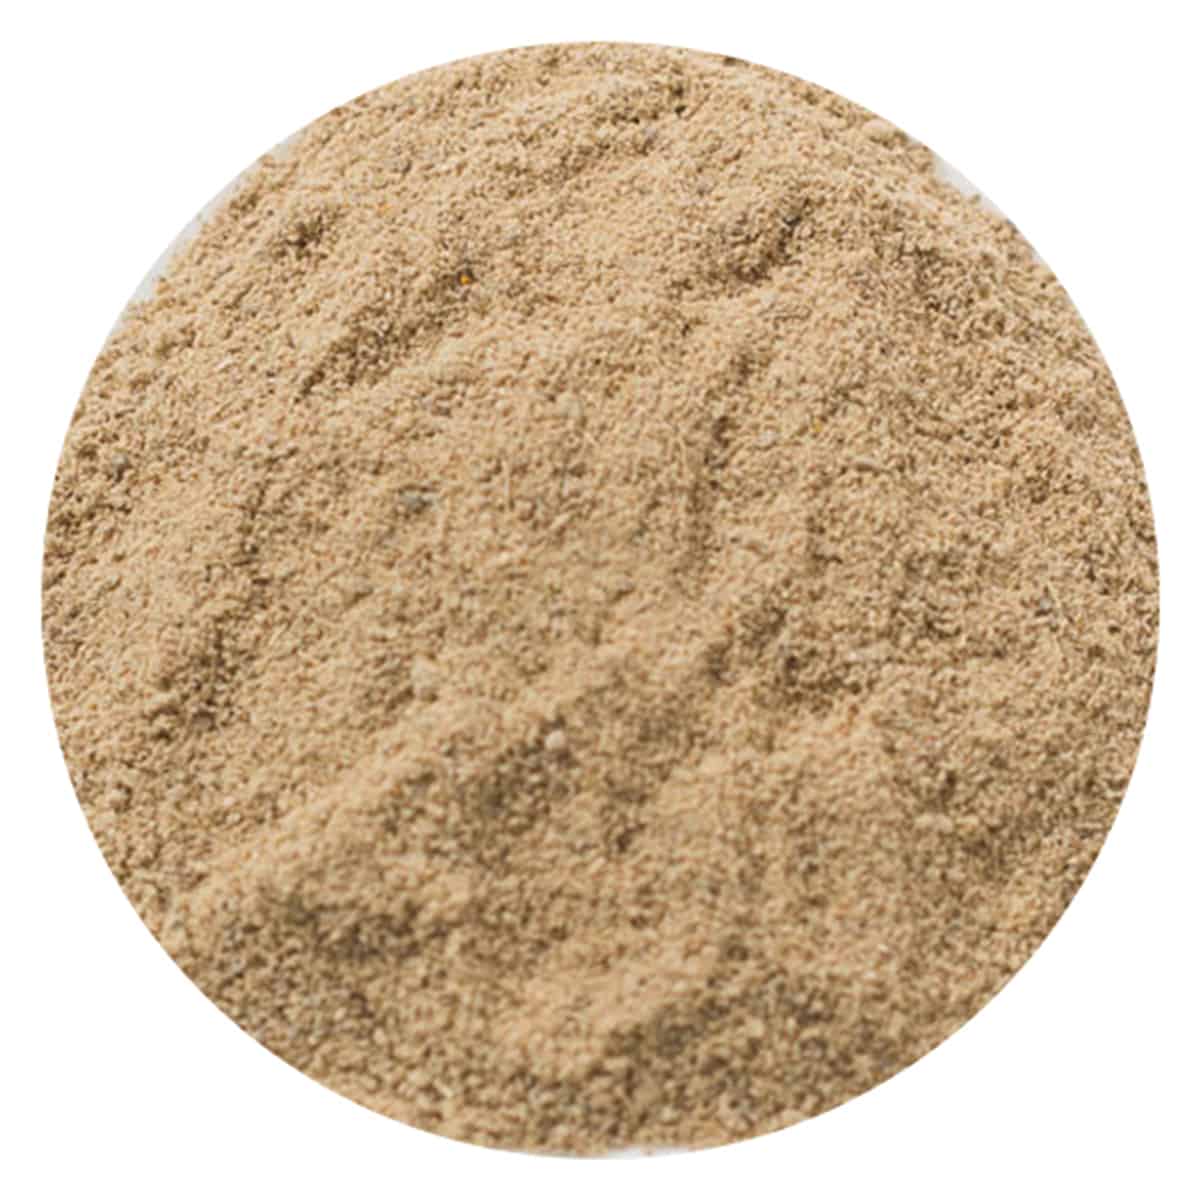 Buy IAG Foods Dried Mango Powder (Amchur Powder) - 1 kg